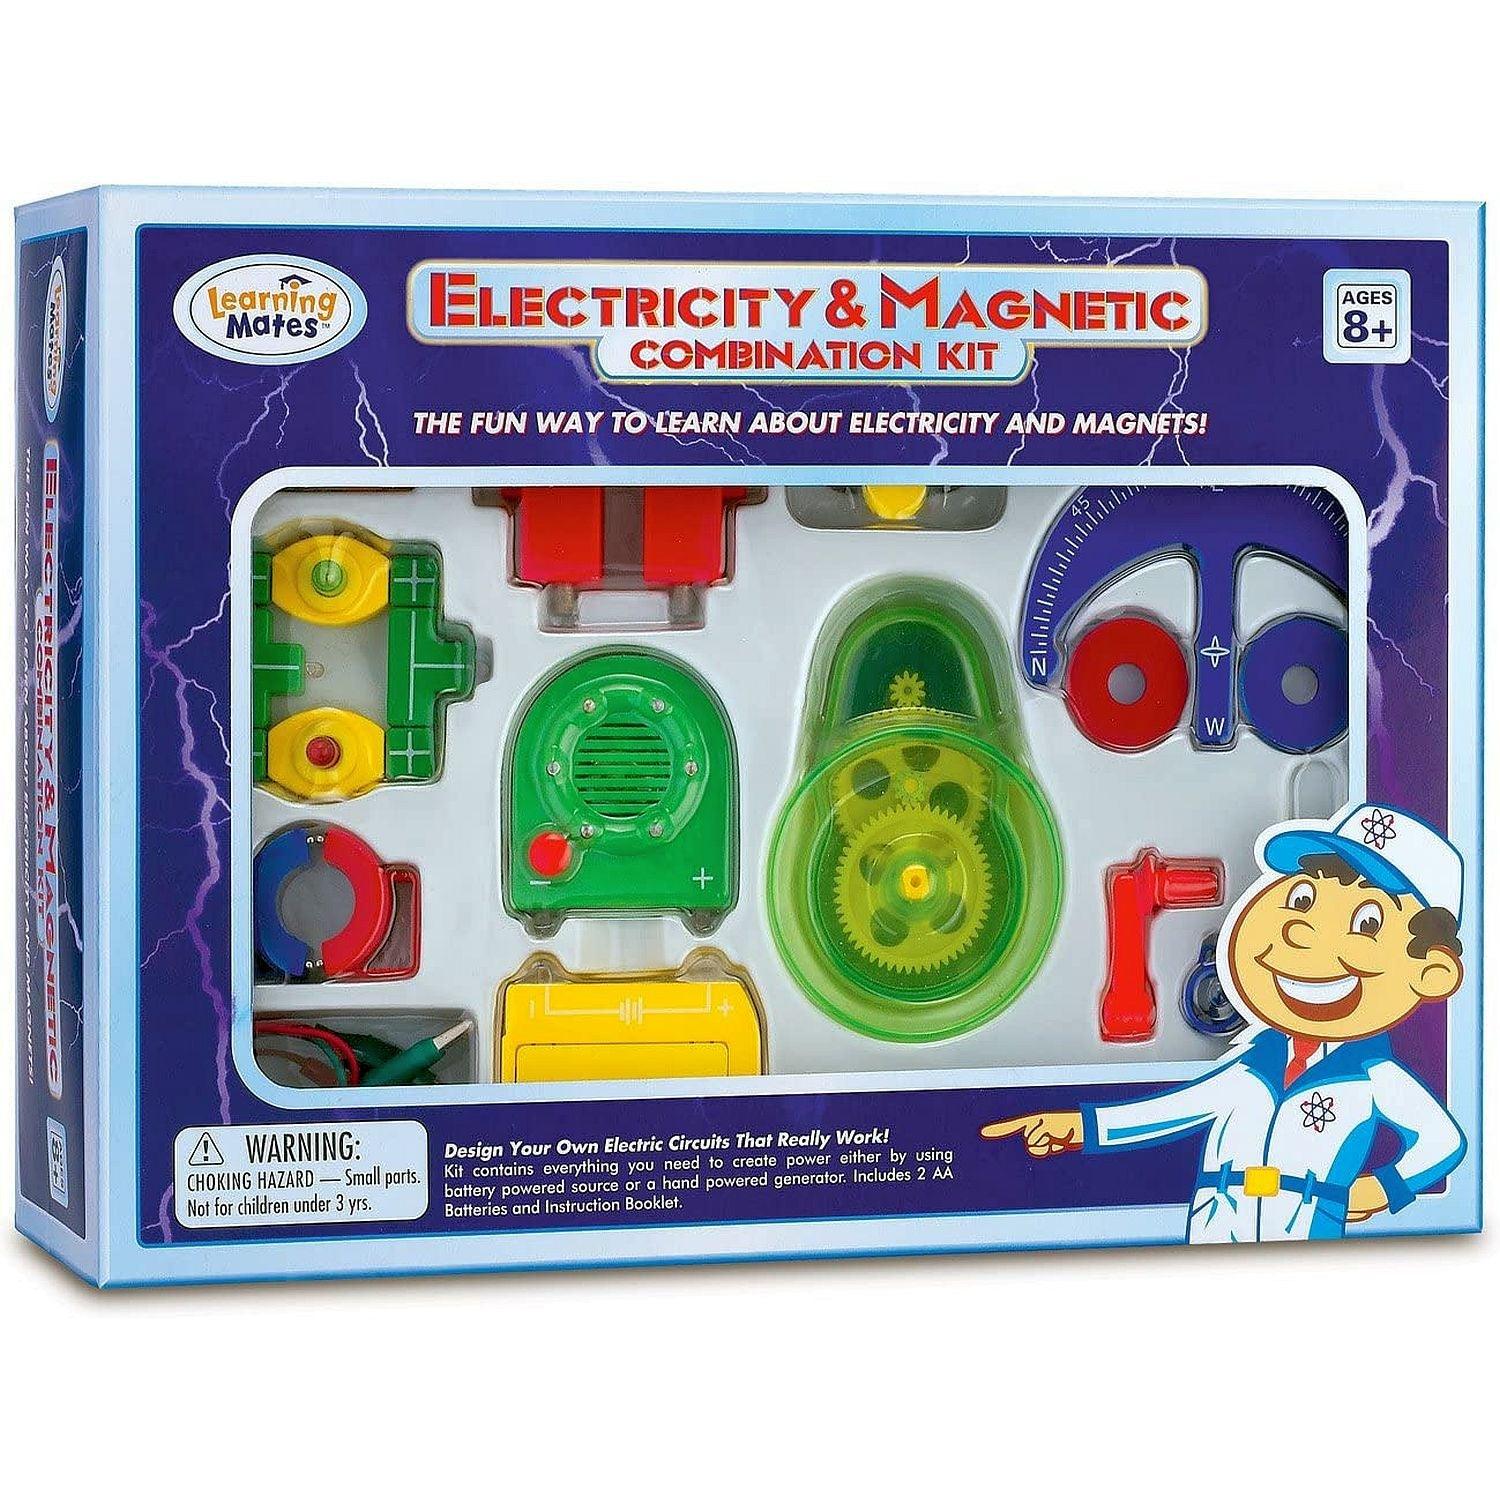 Electricity kit